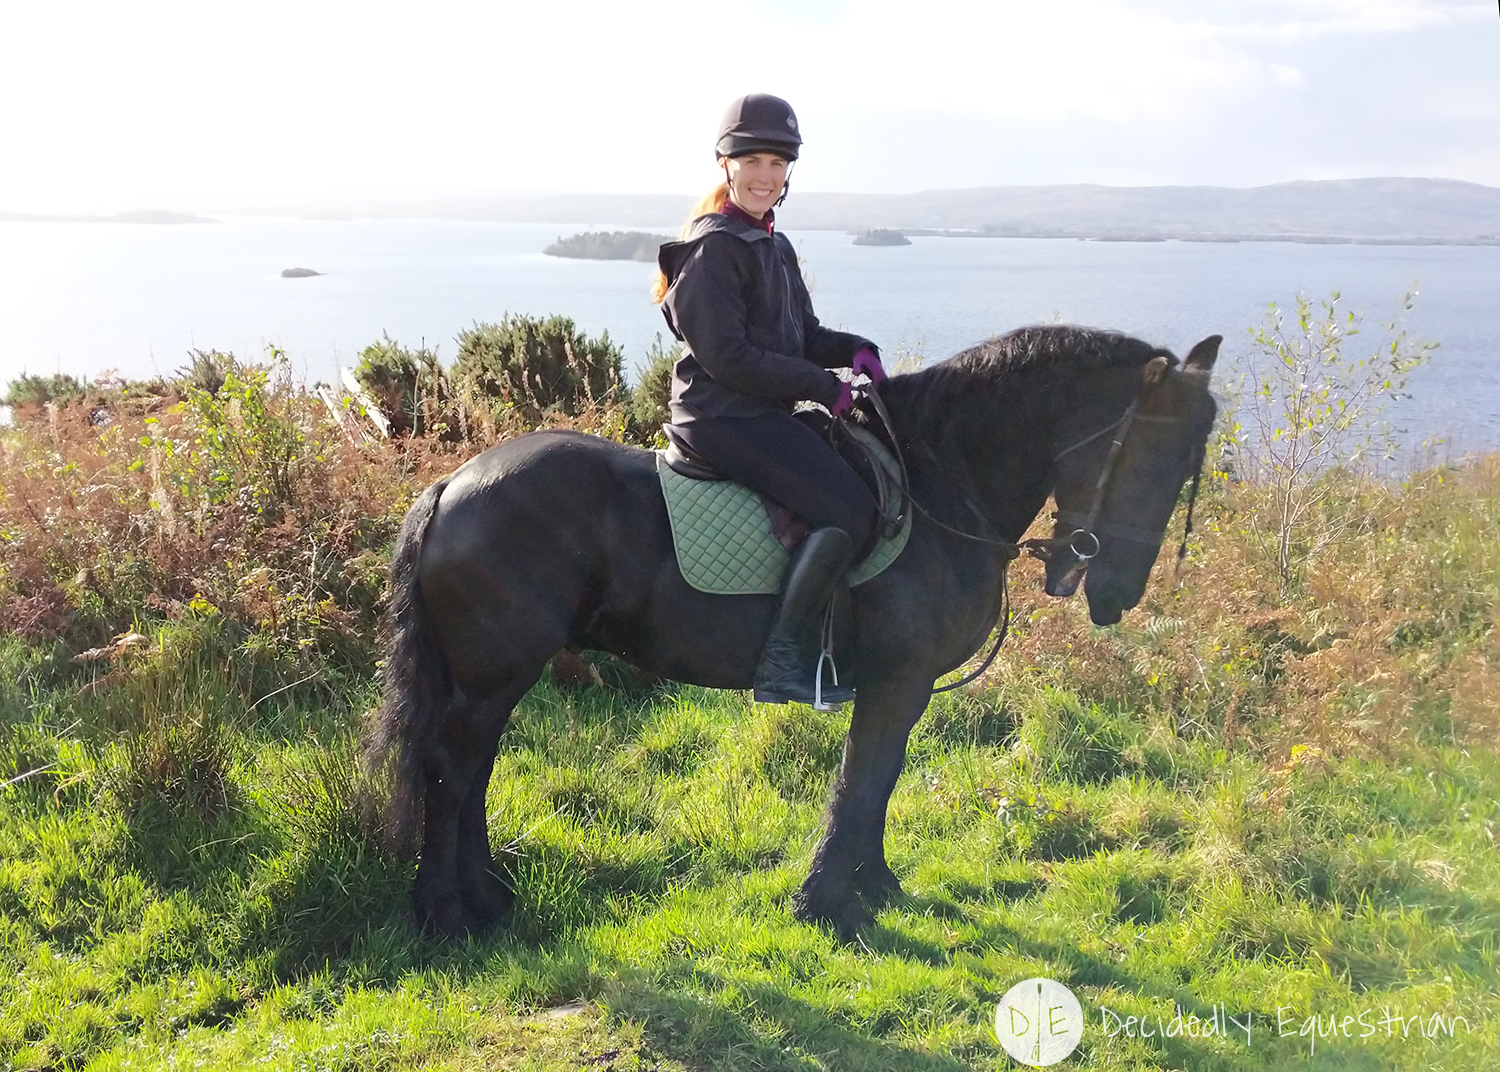 Finding Horses While Traveling - Ireland